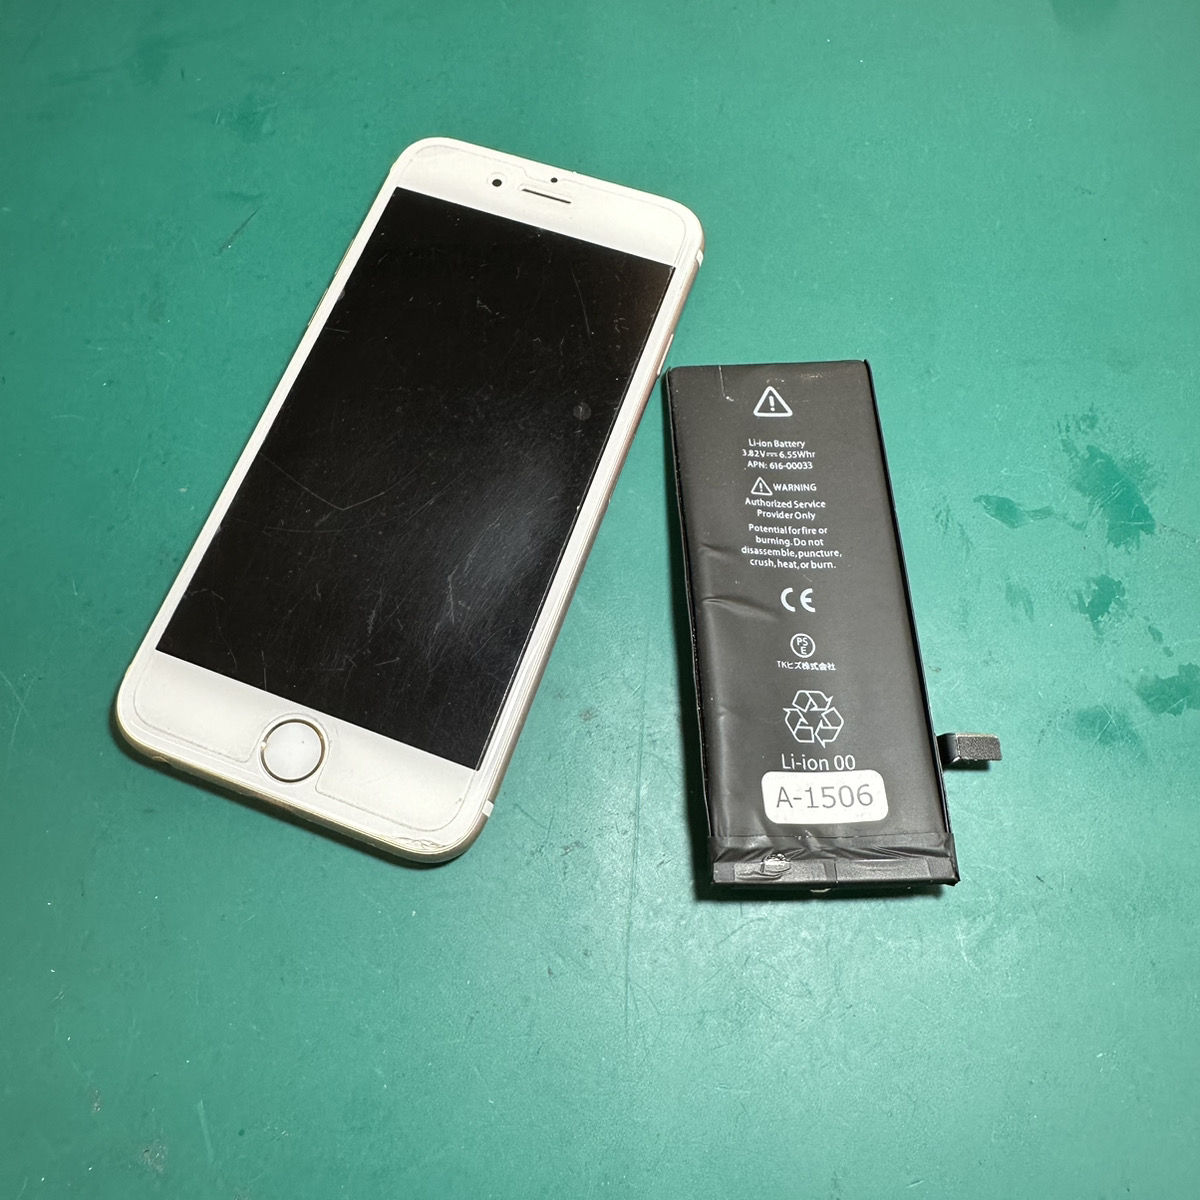 浦和原山店: iPhone6sバッテリー交換3,800円